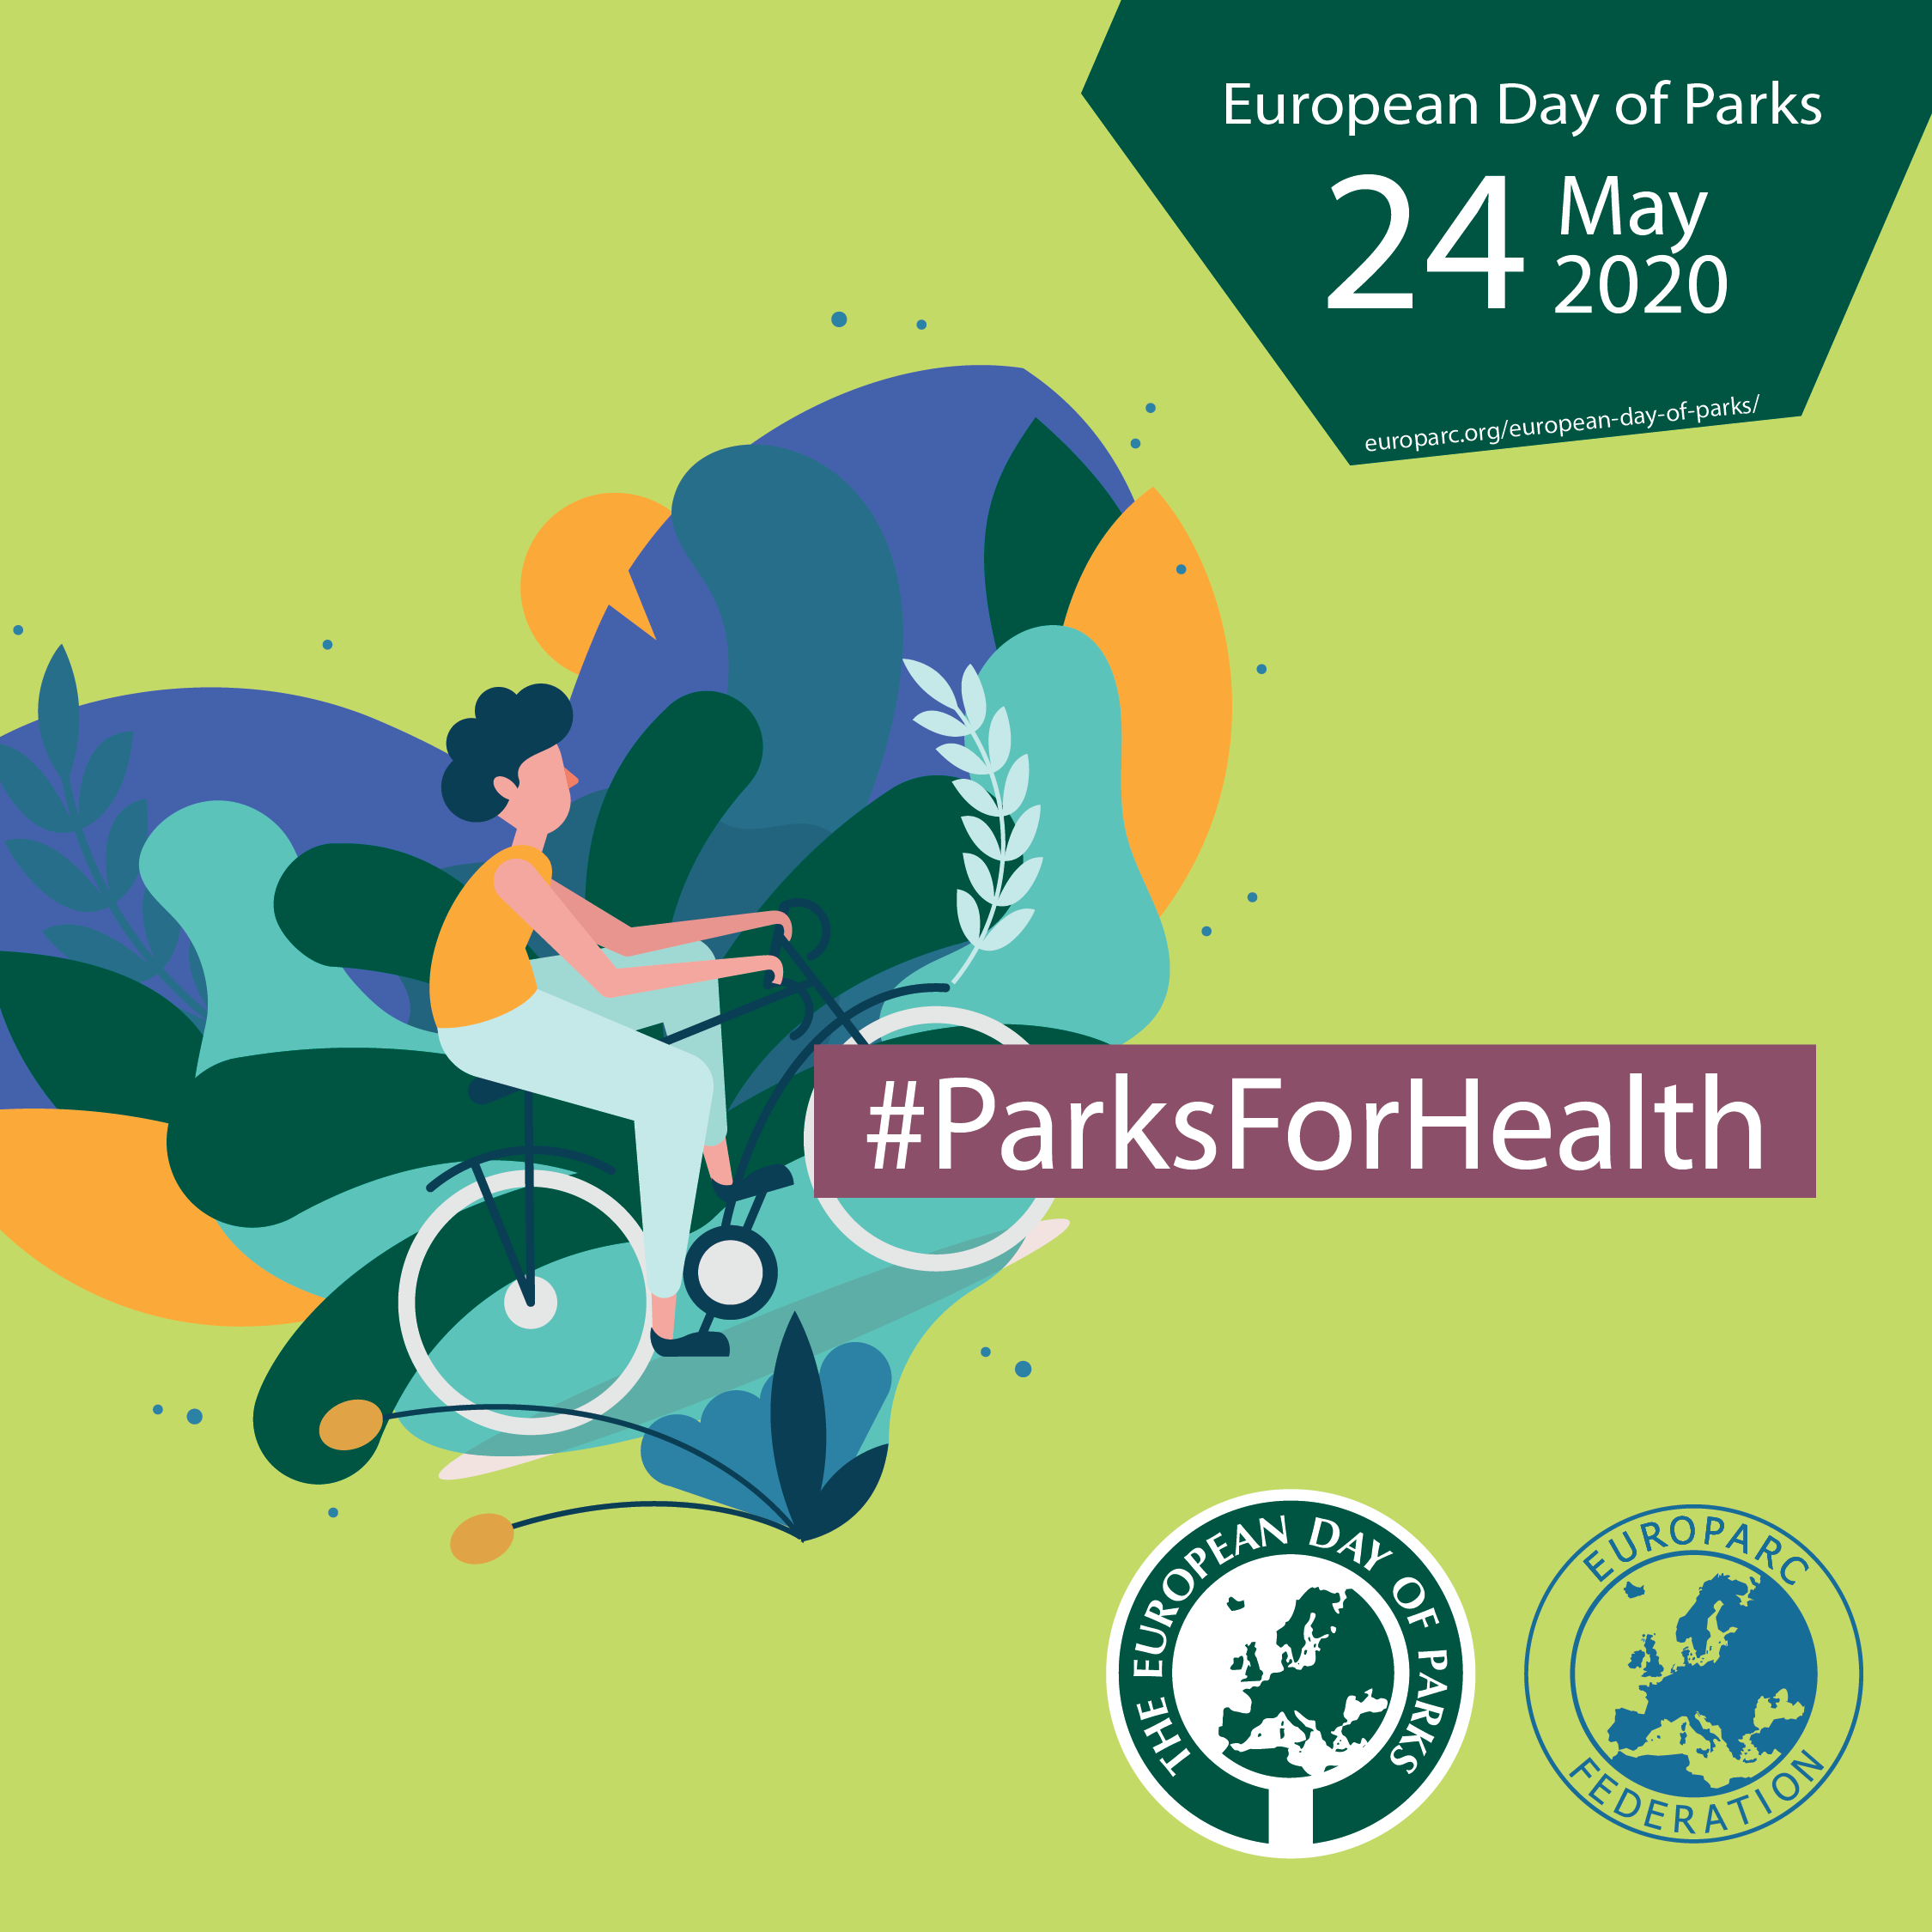 Locandina della giornata europea dei parchi con disegno stilizzato di una persona su una bicicletta in ambiente naturale in uno sfondo a forma di cuore